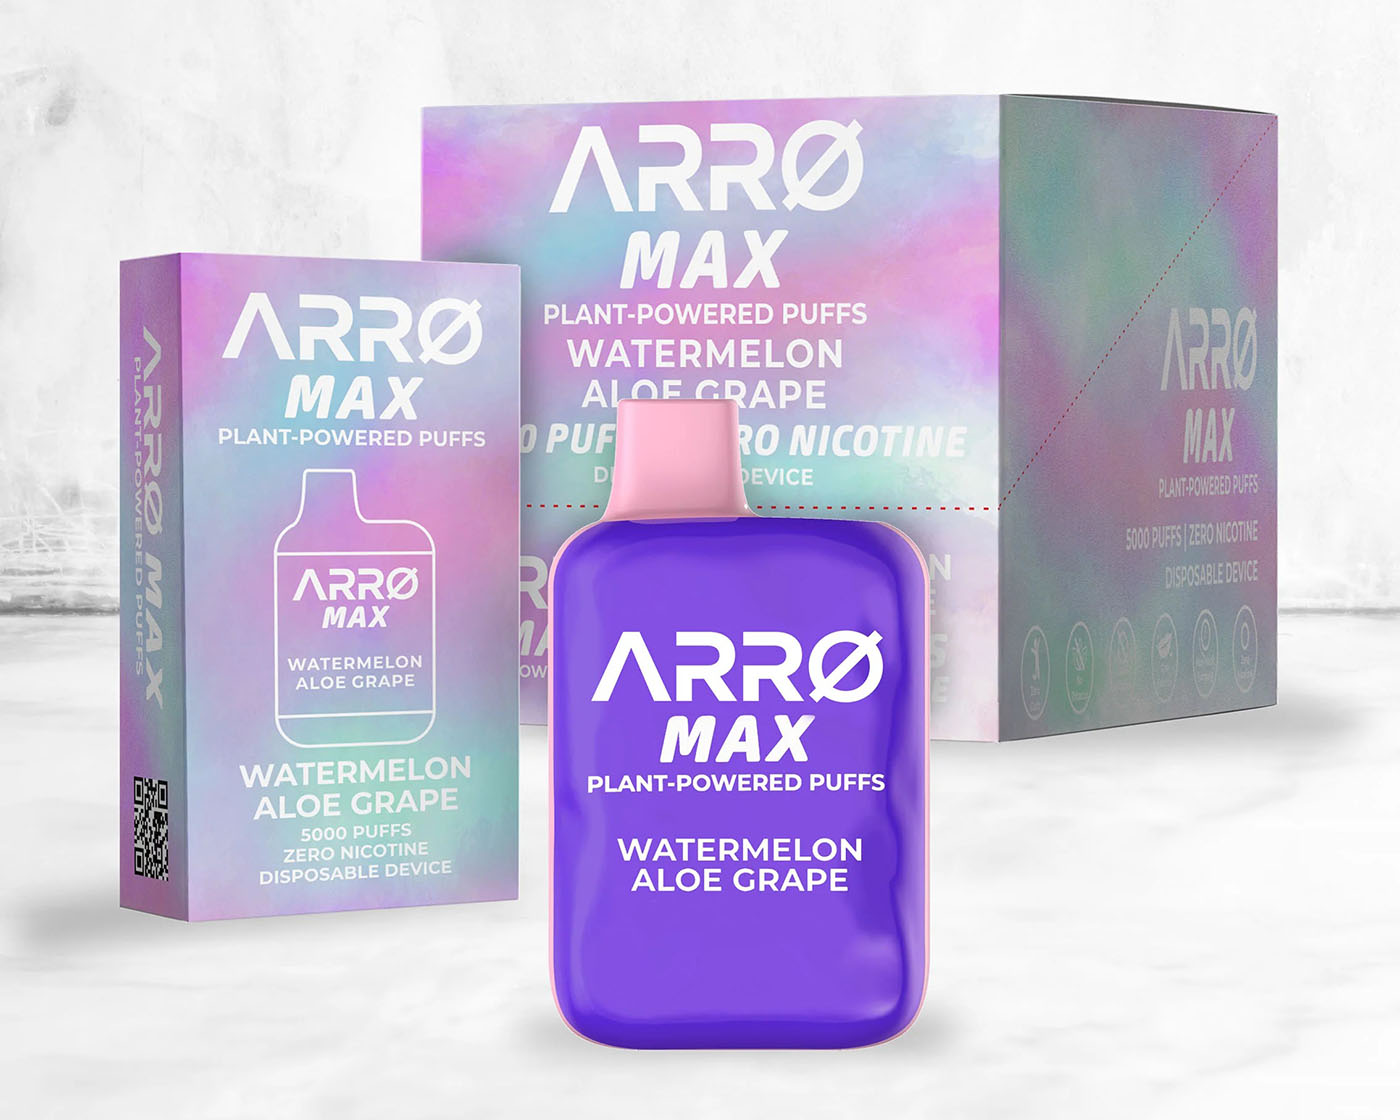 ARRØ MAX device and boxes in Watermelon Aloe Grape flavor